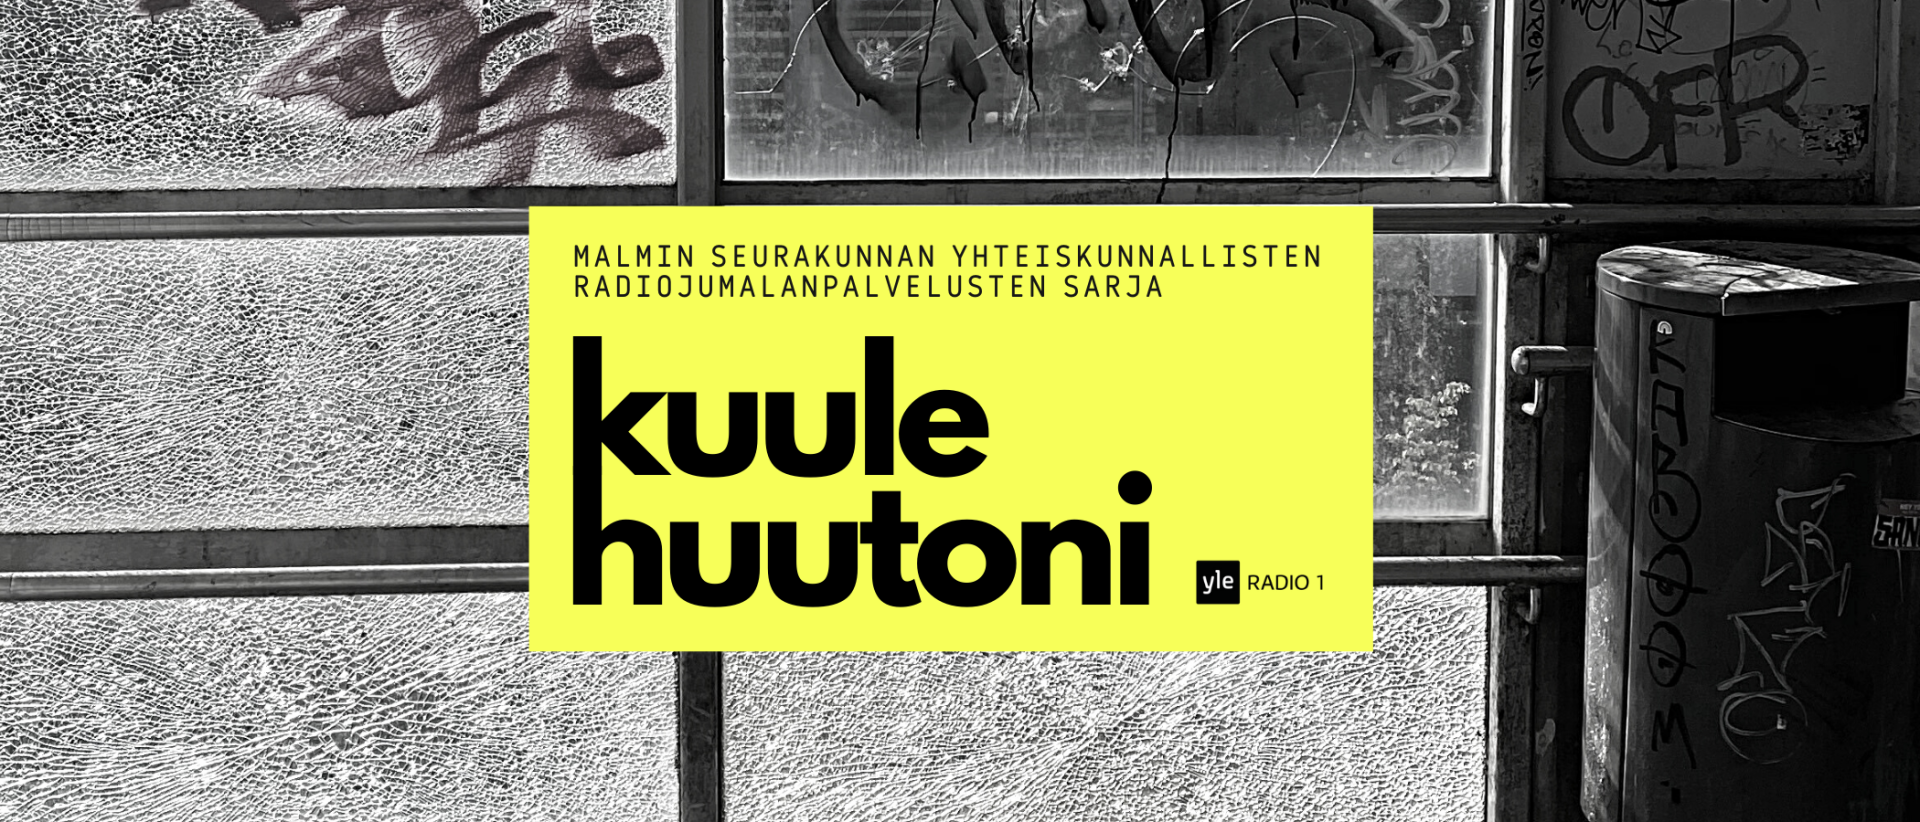 Mustavalkoiseen graffitiseinän päällä keltainen kyltti jossa teksti: Kuule huutoni - Malmin seurakunnan yhteiskunnallisten radiojumalanpalvelusten sarja, Yle radio 1.